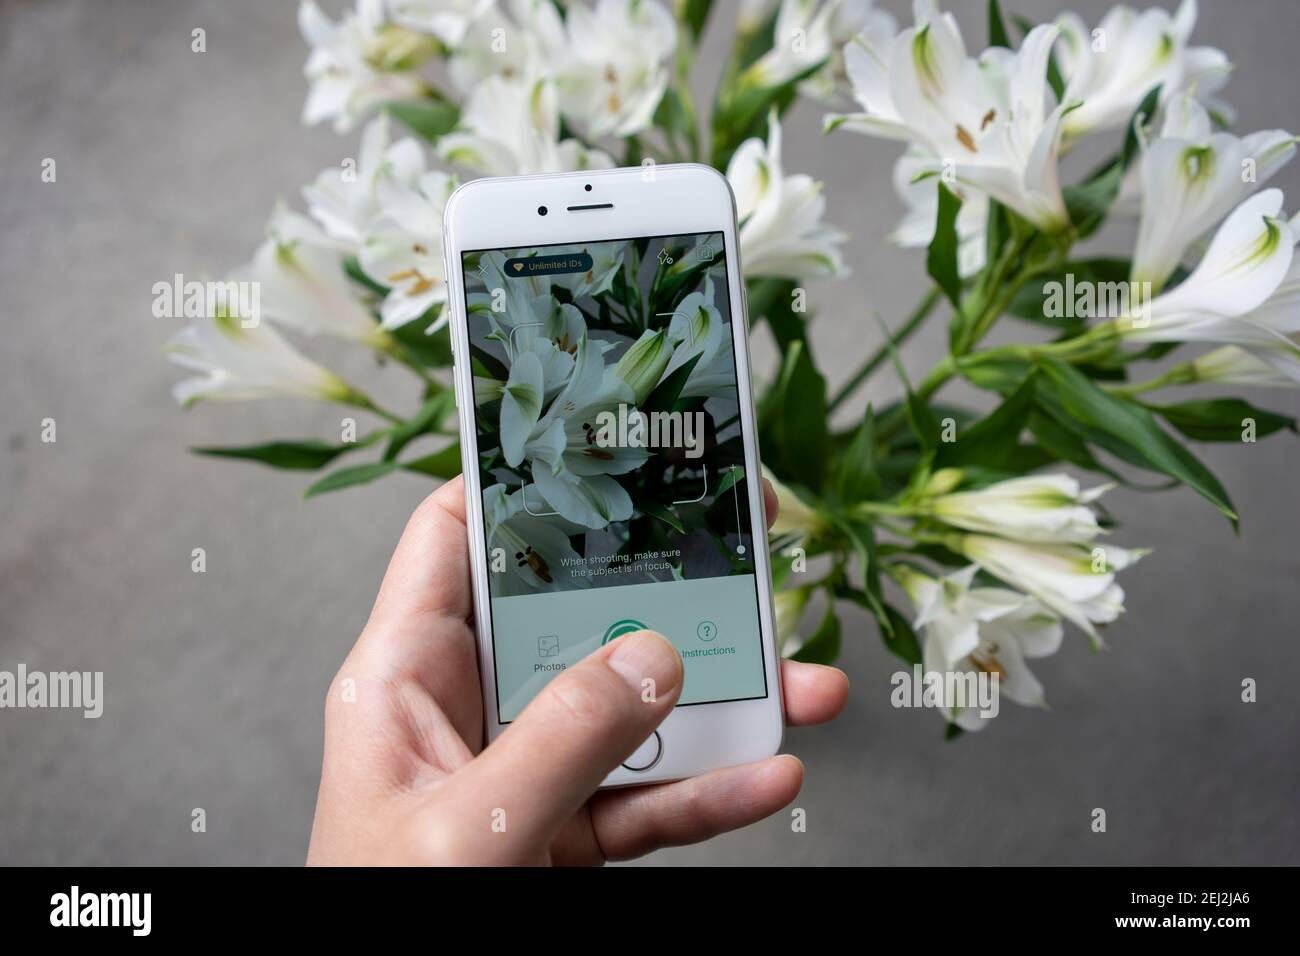 Un anthophile teste l'application PictureThis sur un iPhone pour identifier une fleur. La fleur sur l'image est le nénuphar péruvien (nénuphar des Incas). Banque D'Images